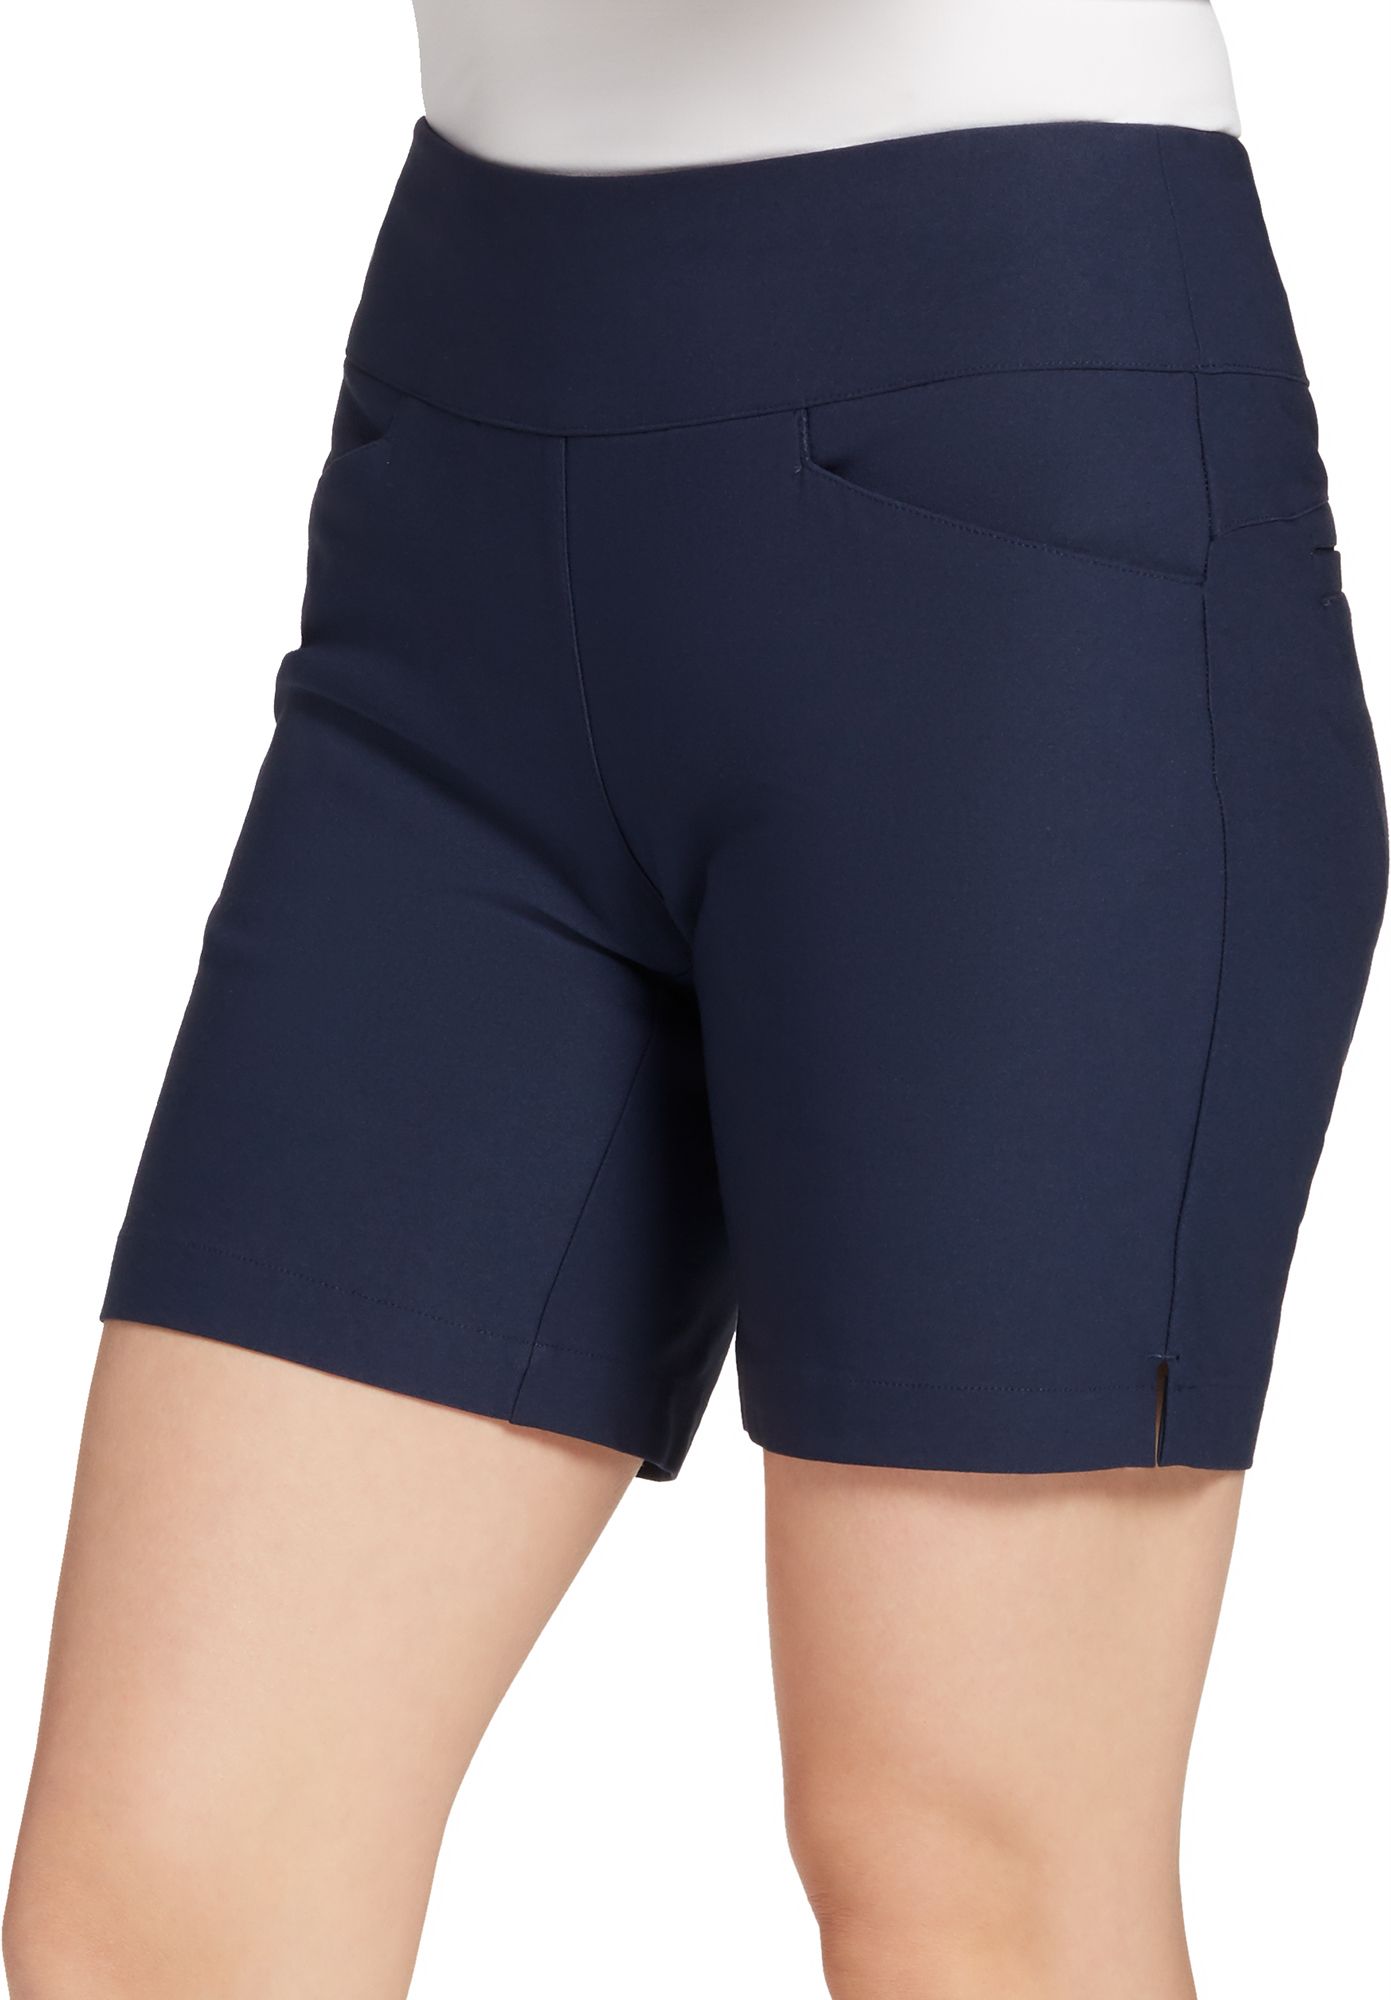 nike women's golf shorts clearance